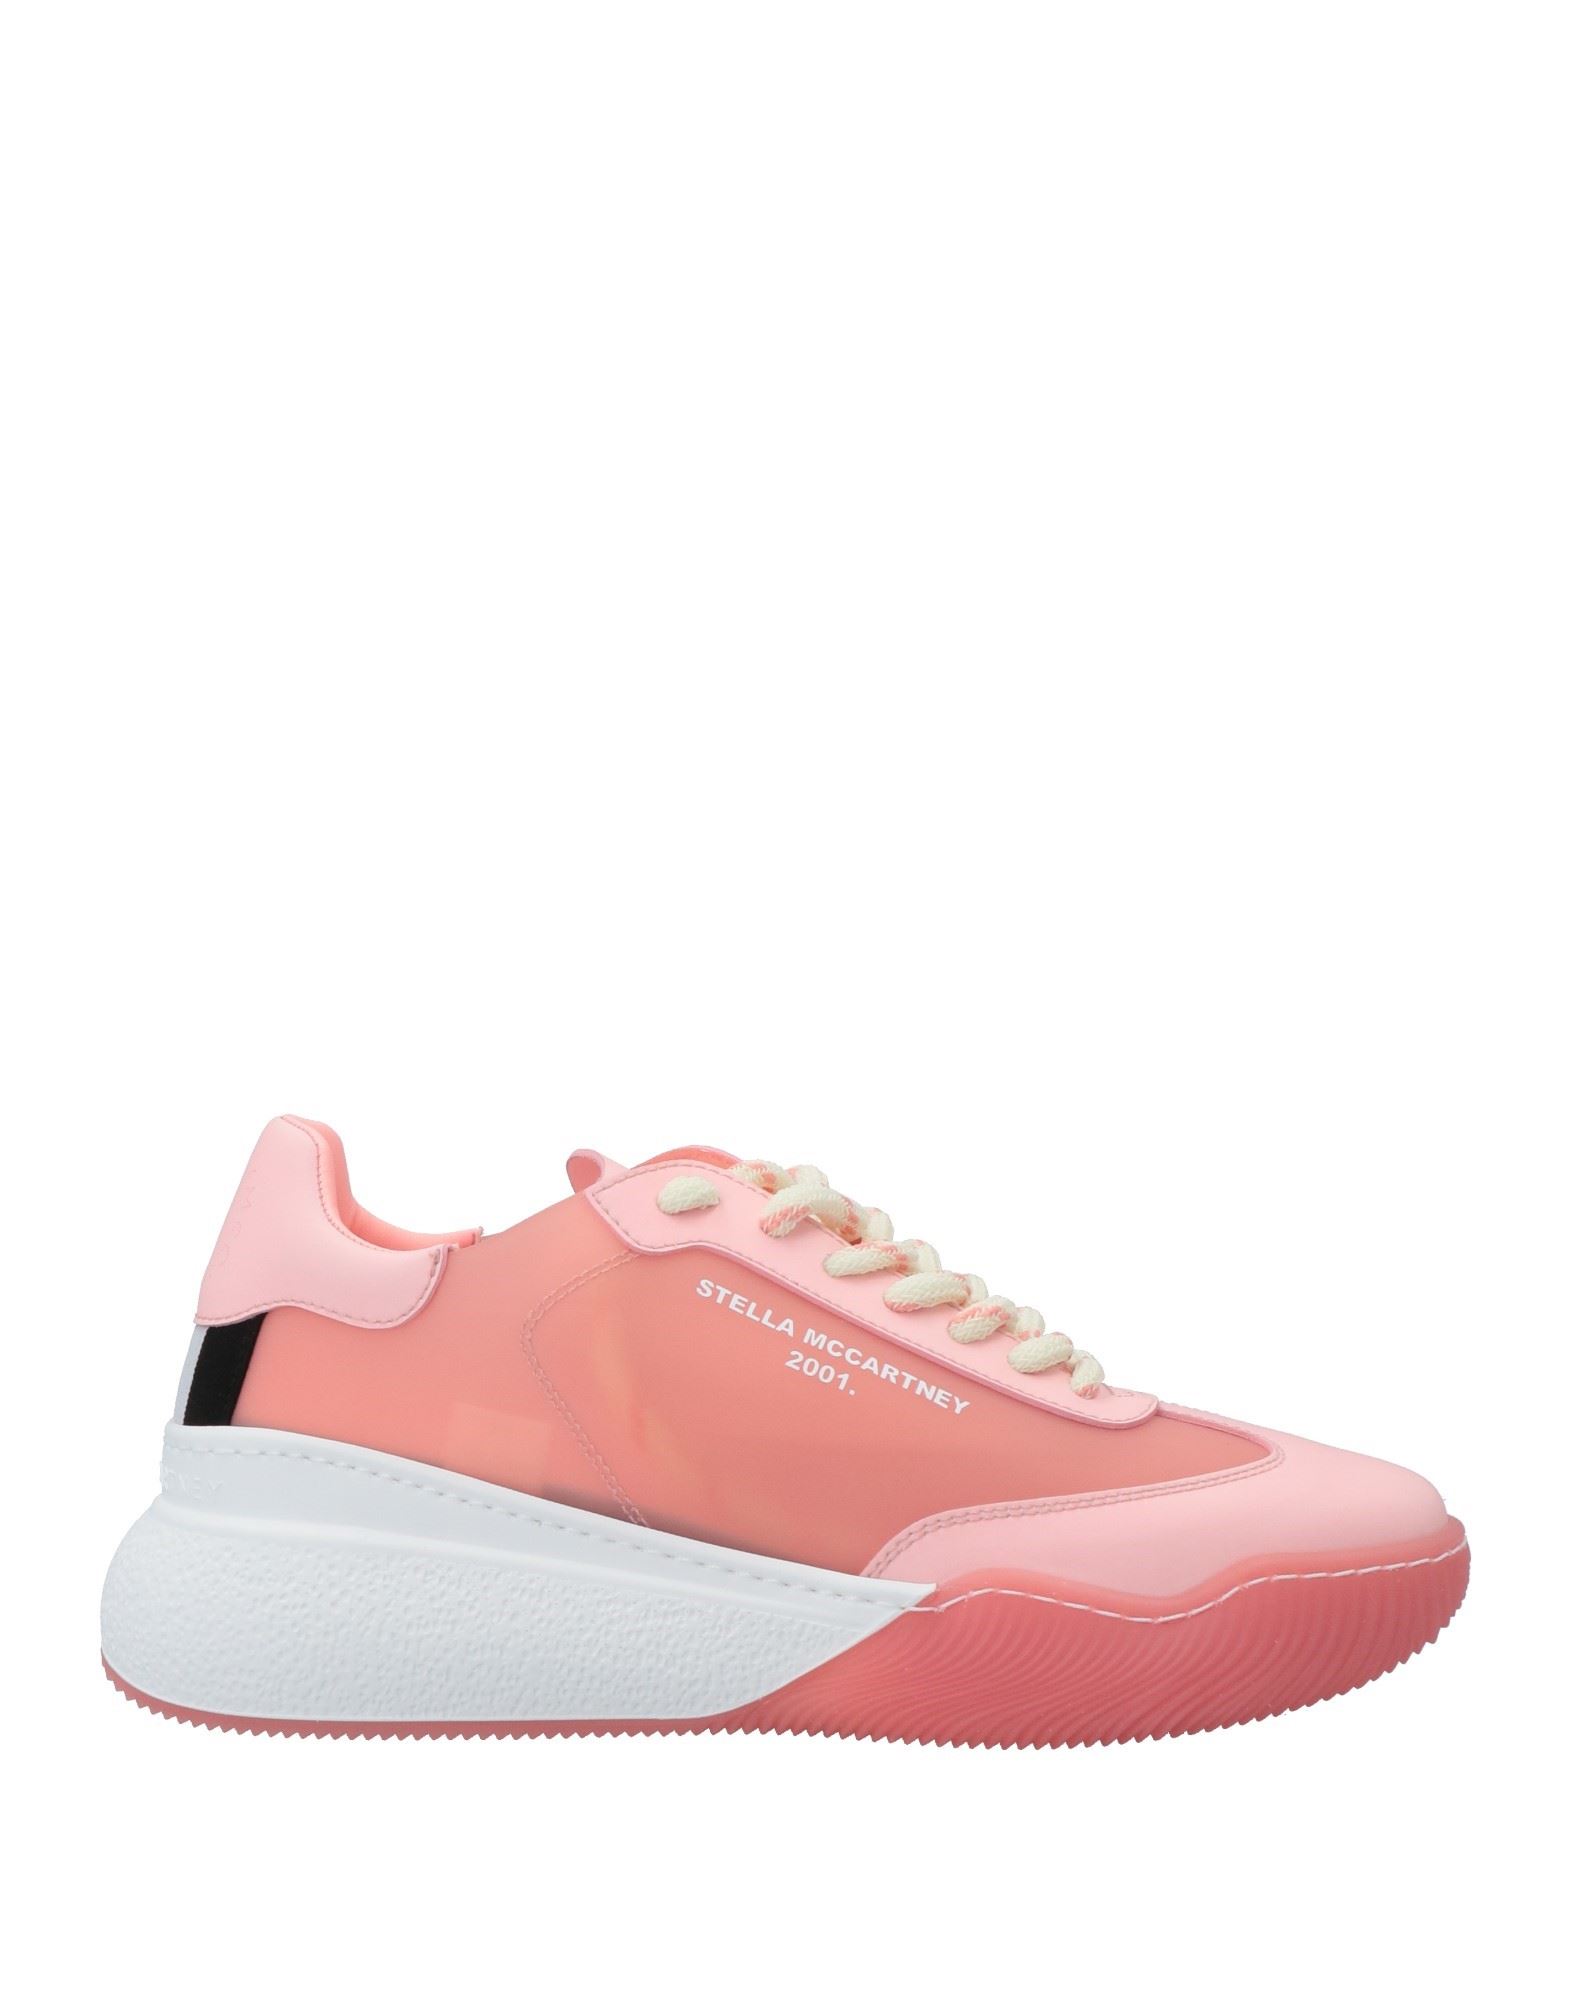 Stella Mccartney Woman Sneakers Pink Size 7 Textile Fibers